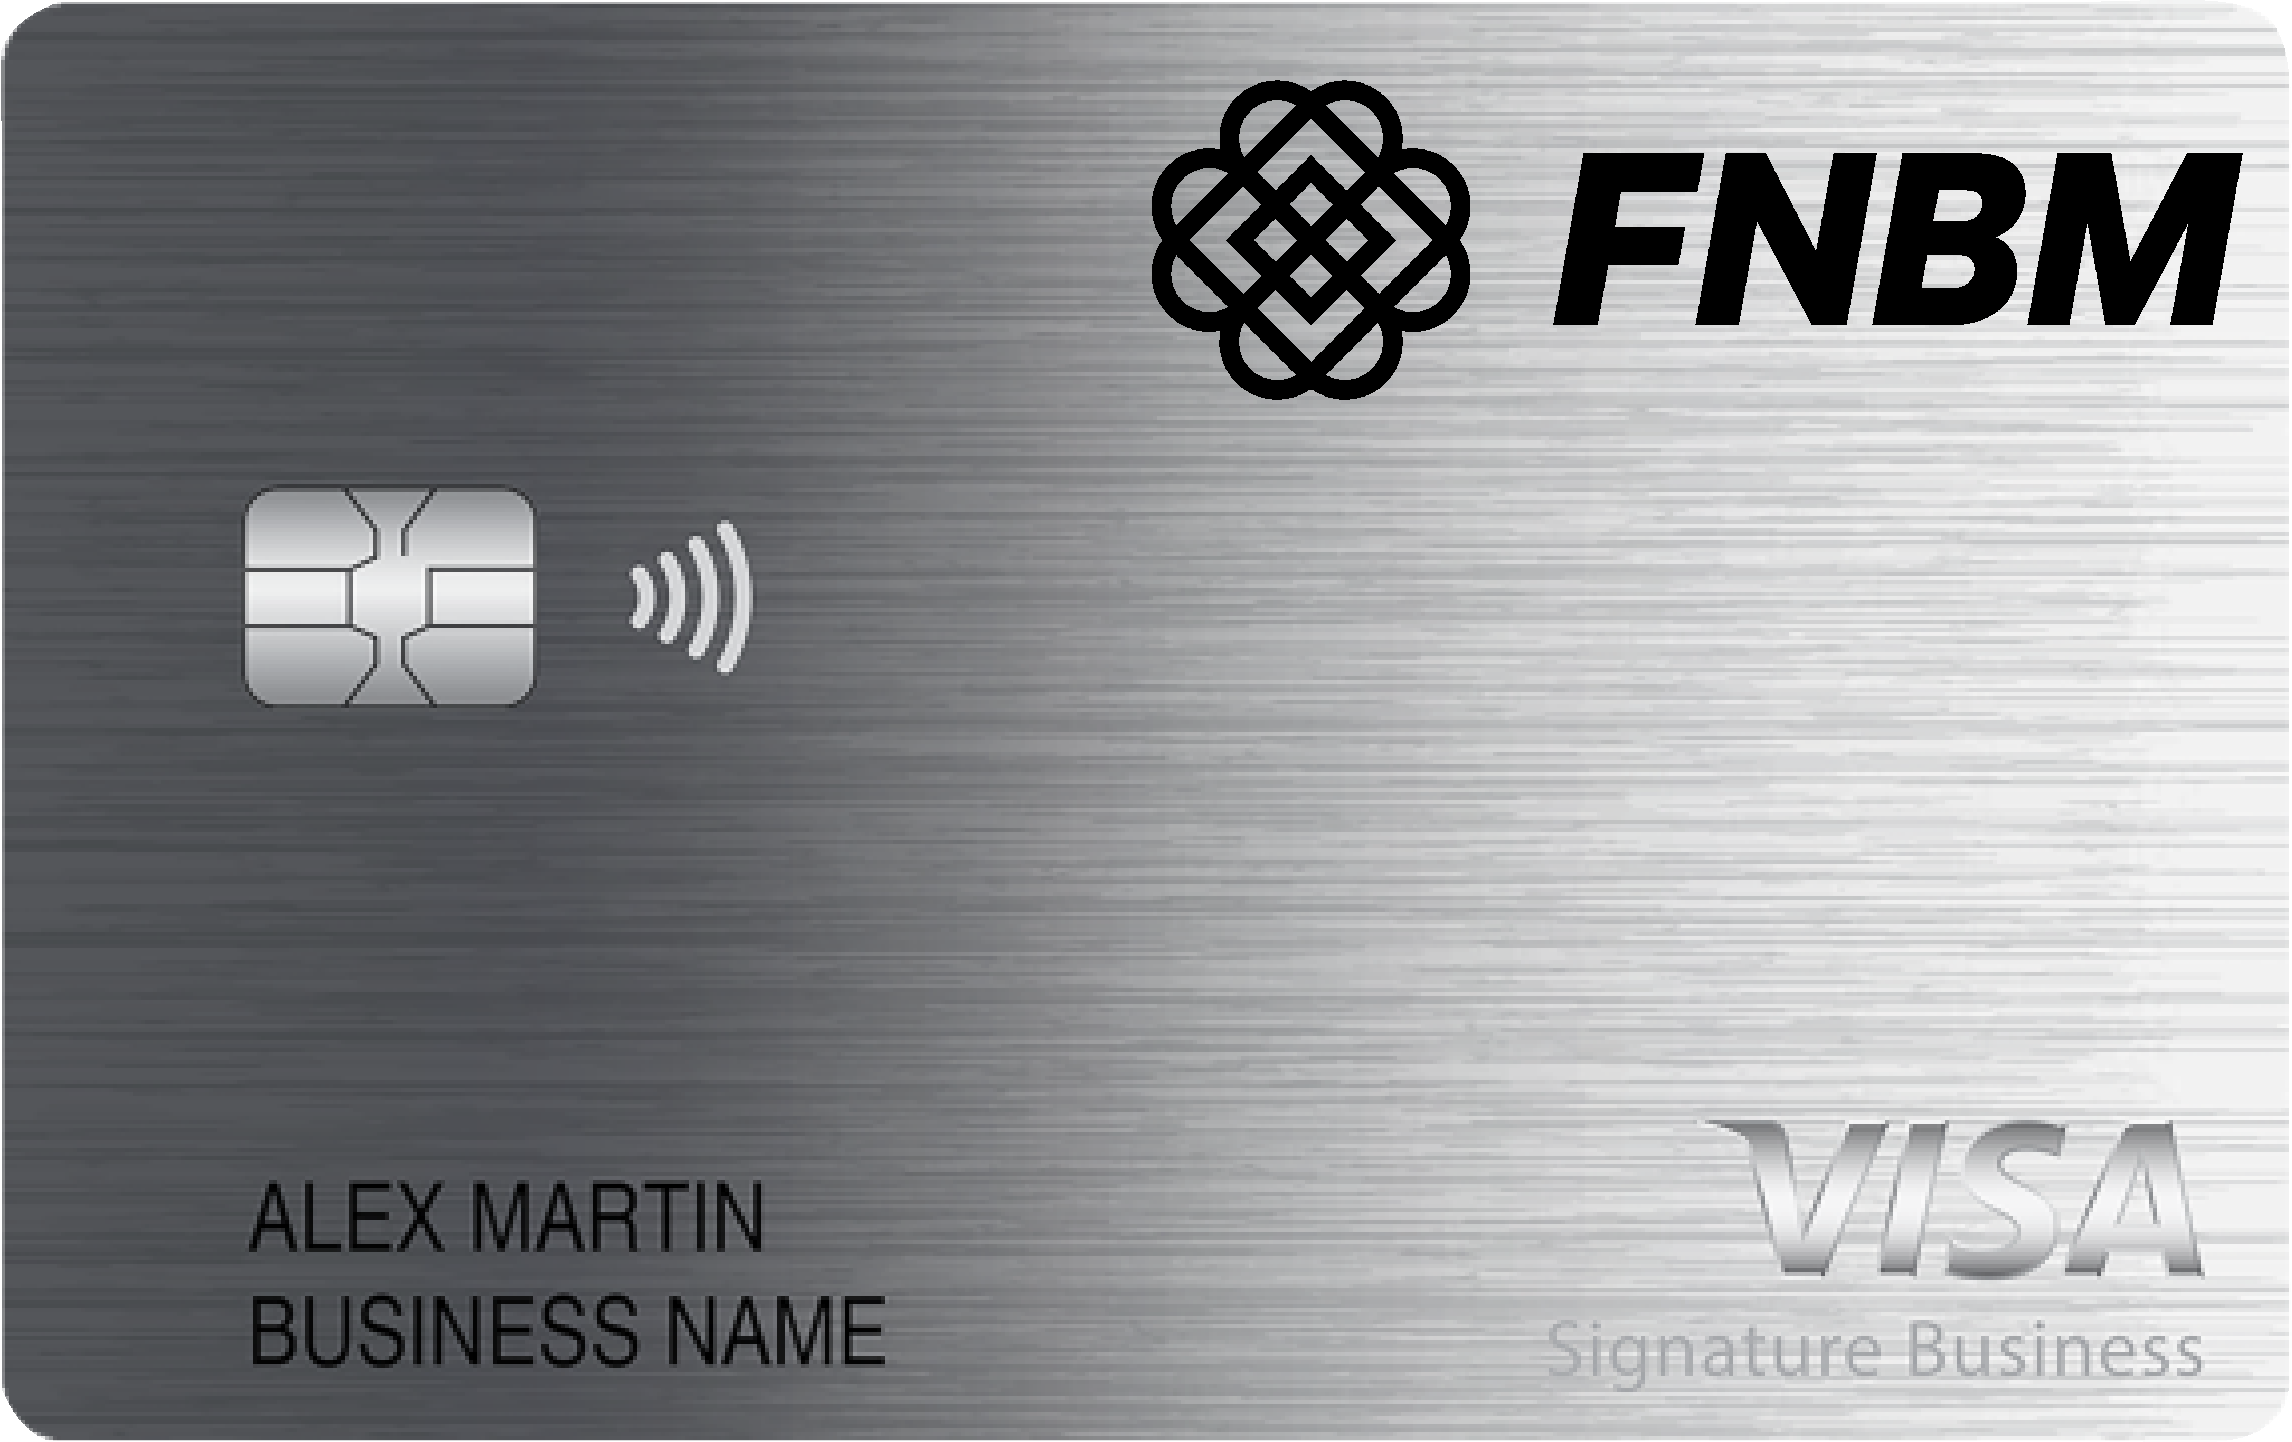 FNBM Bank Smart Business Rewards Card